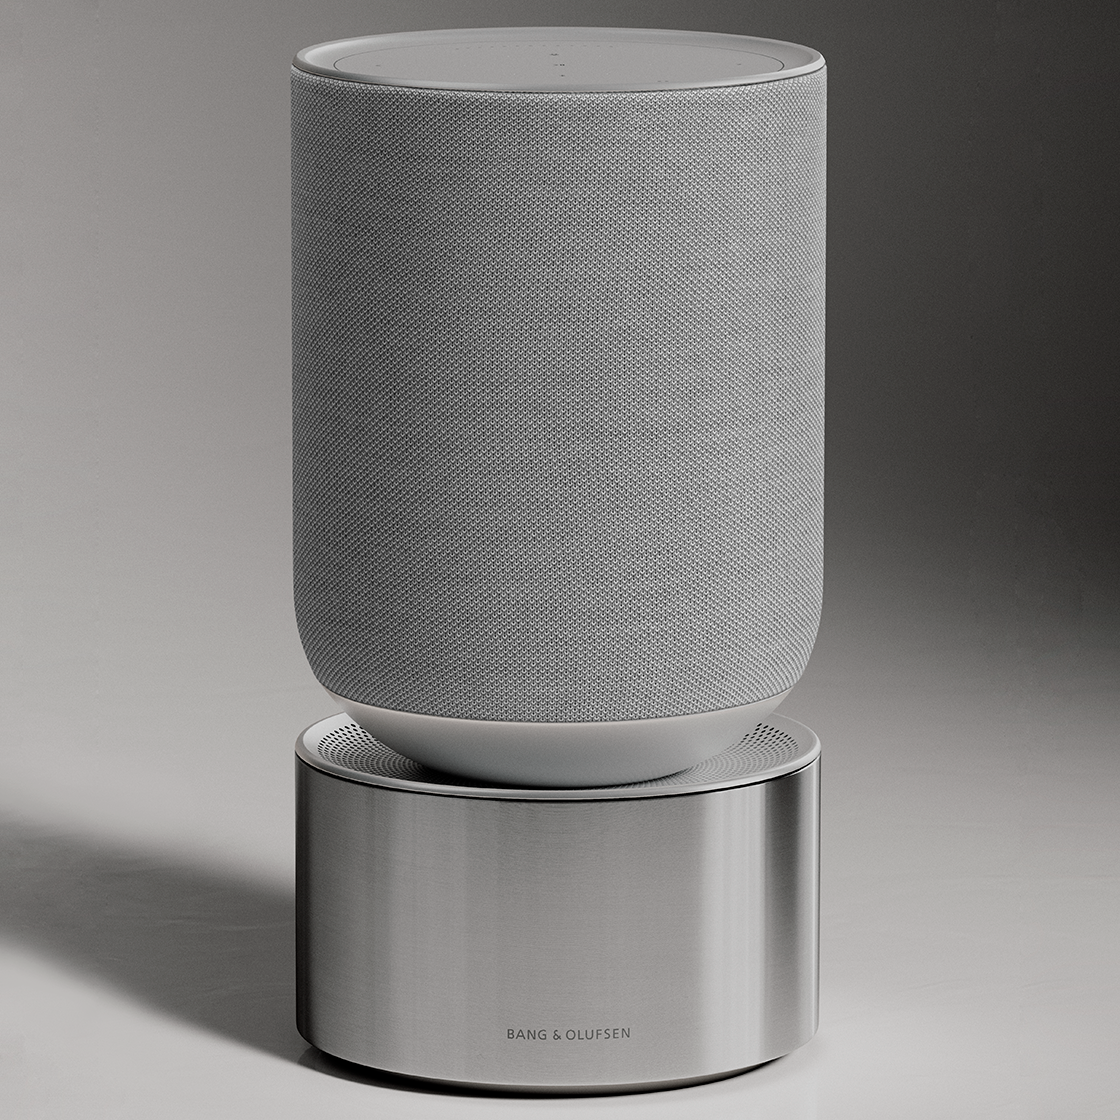 Beosound Balance - Home interior speaker